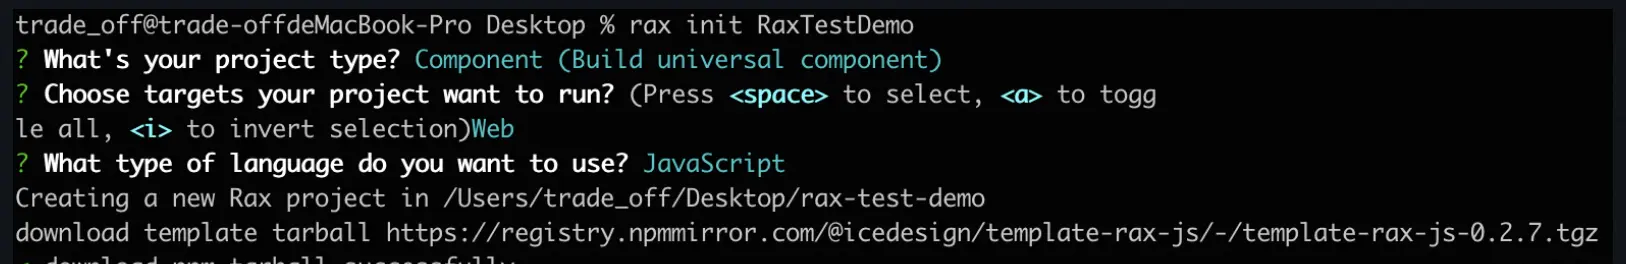 Rax2Taro：从零实现一个跨框架编译器